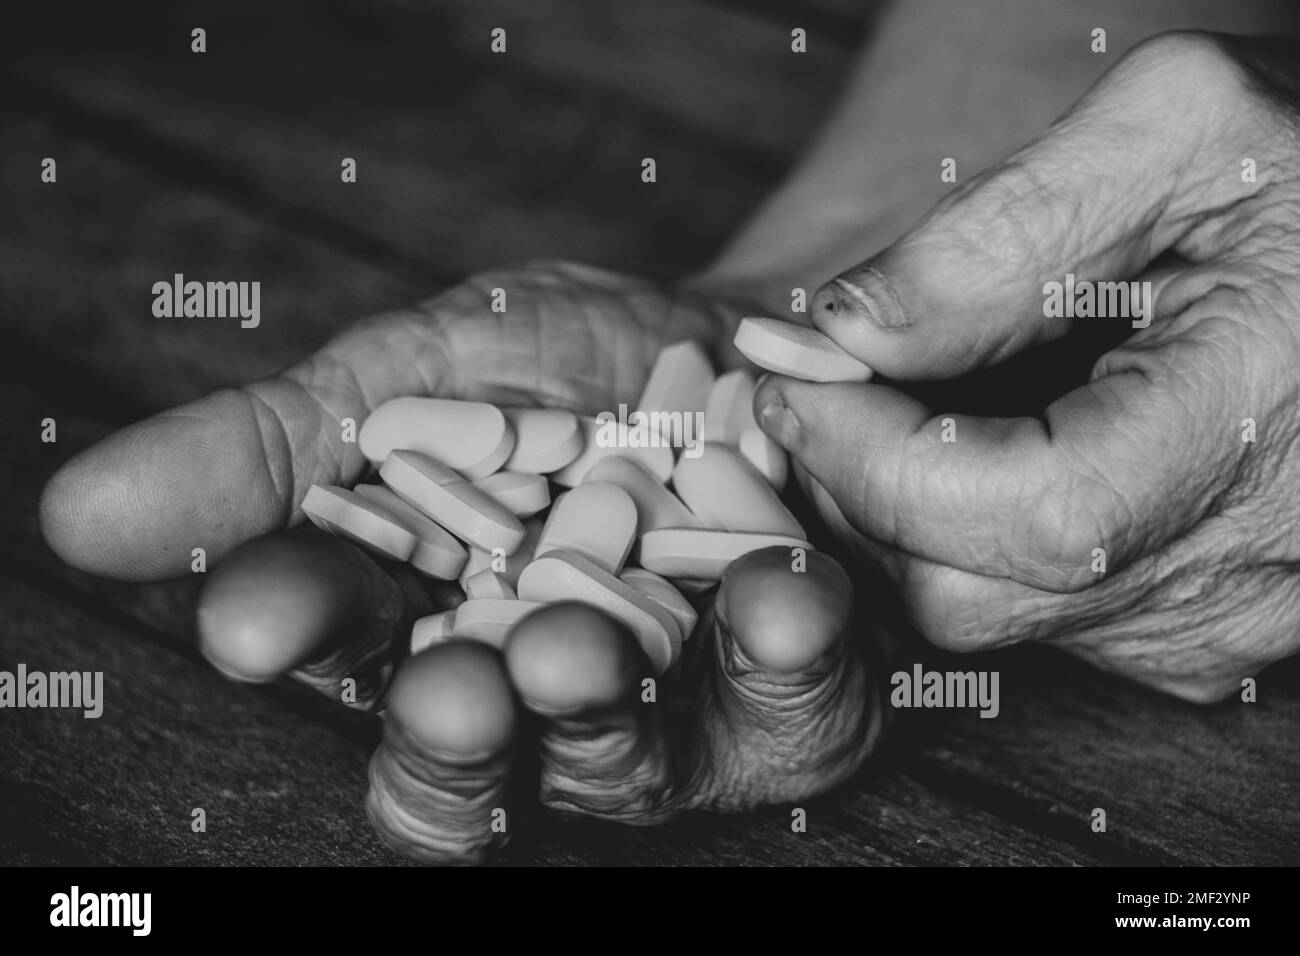 Großmutter hält gelbe Pillen in den Händen auf einem Holztisch, Pillen in den Händen und Frauen liegen und Medizin Stockfoto